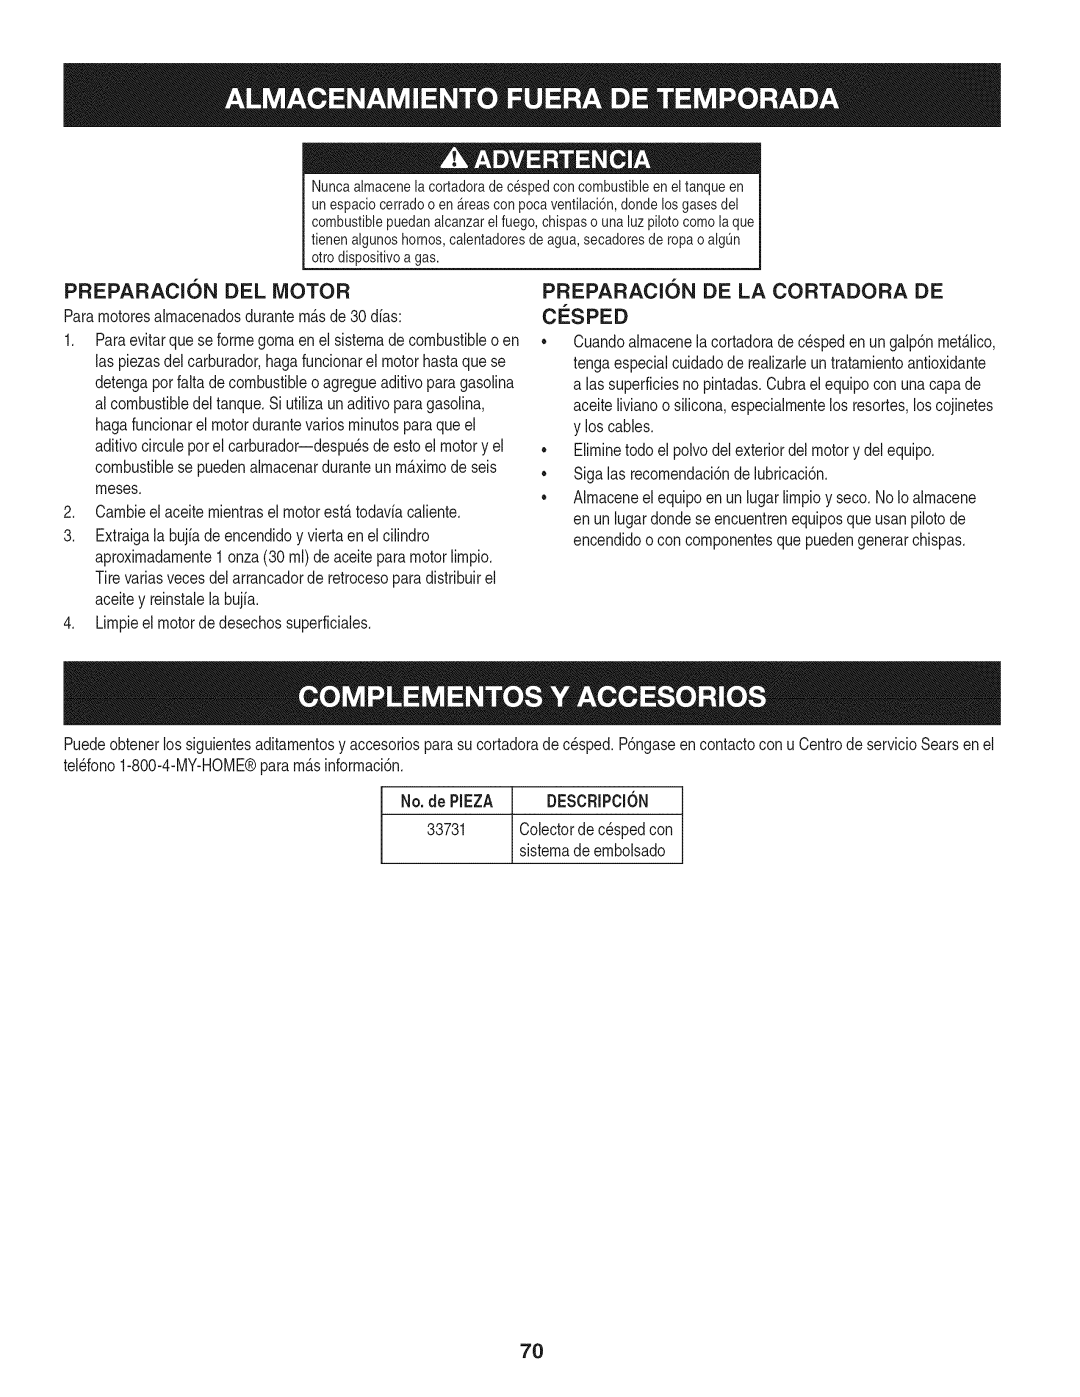 Craftsman 247.889980 manual PREPARACI6N, Del Motor, De La Cortadora, Cosped 